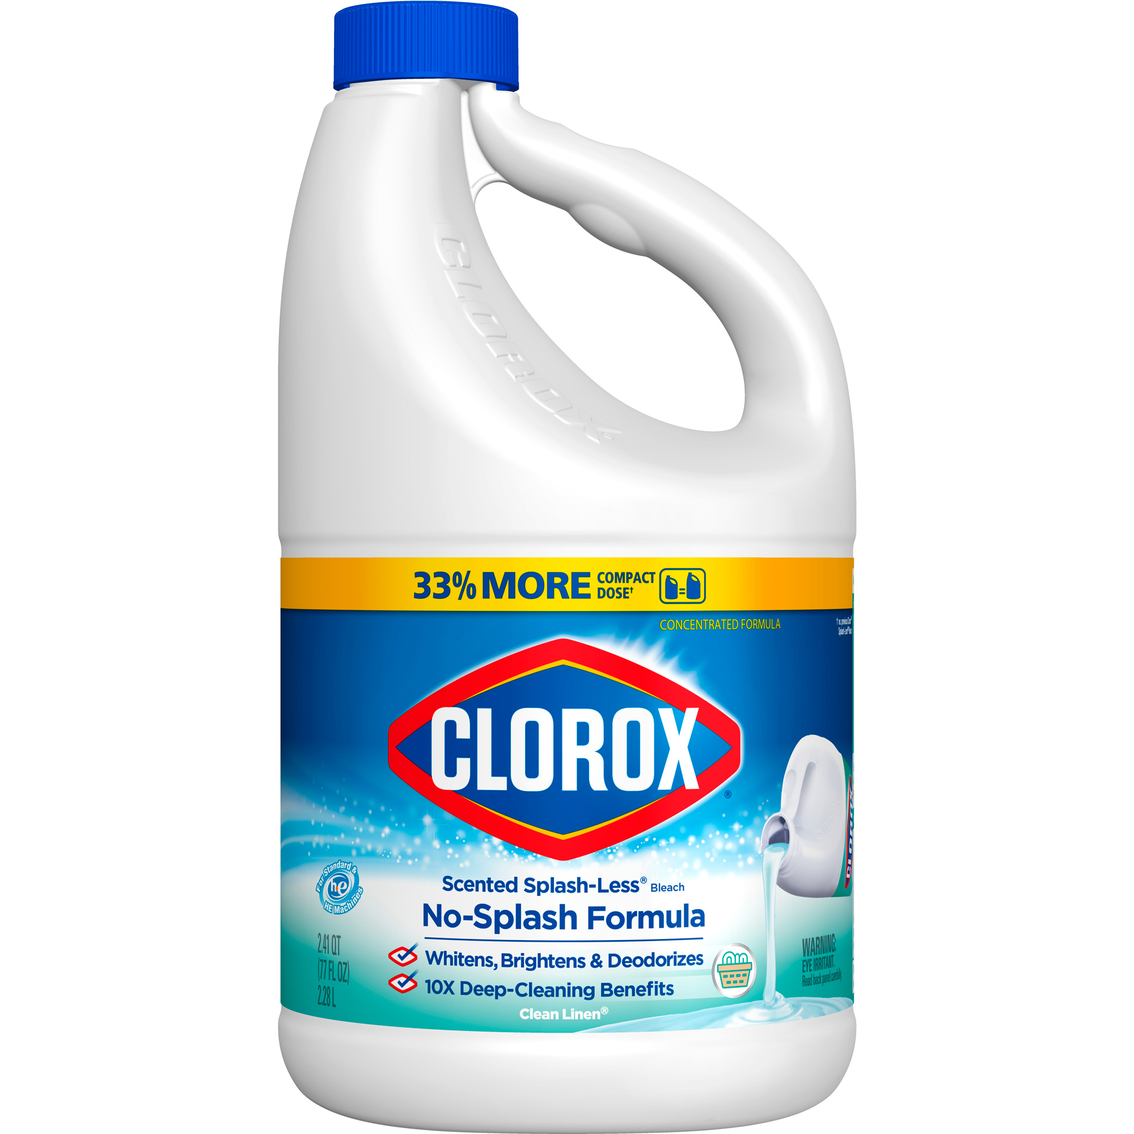 Clorox Clean Linen Liquid Splashless Bleach, 77 oz.